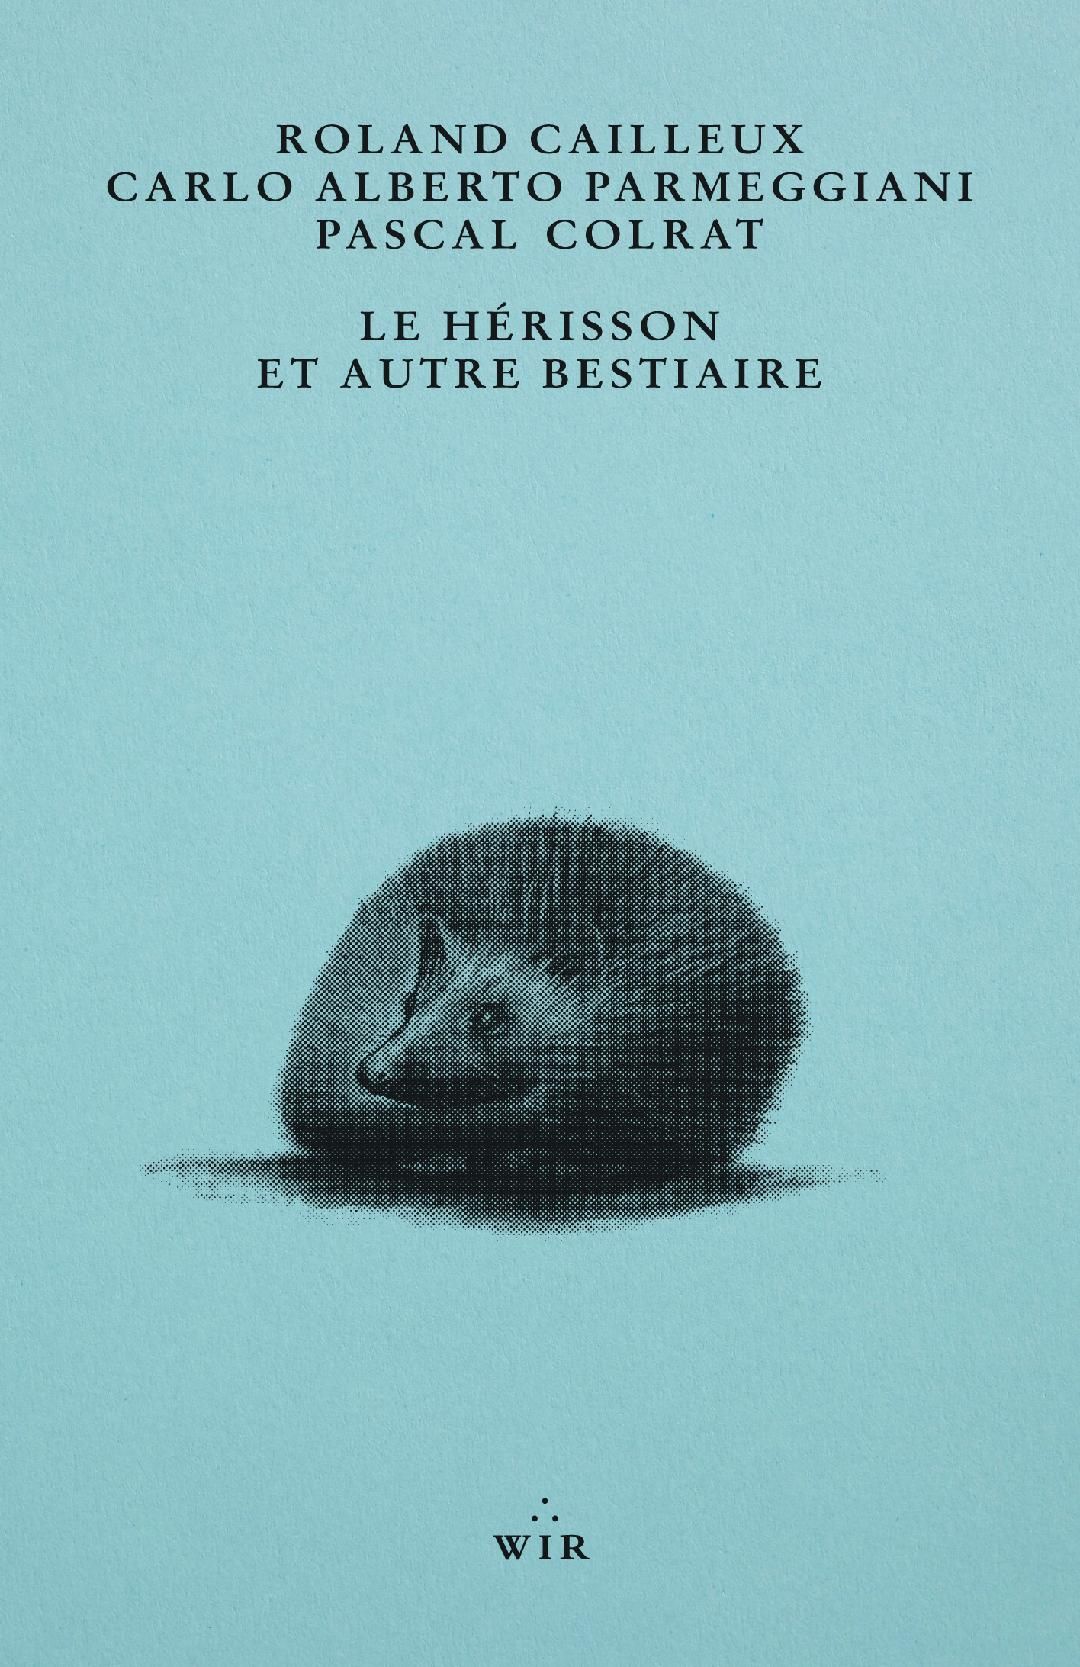 La cover francese